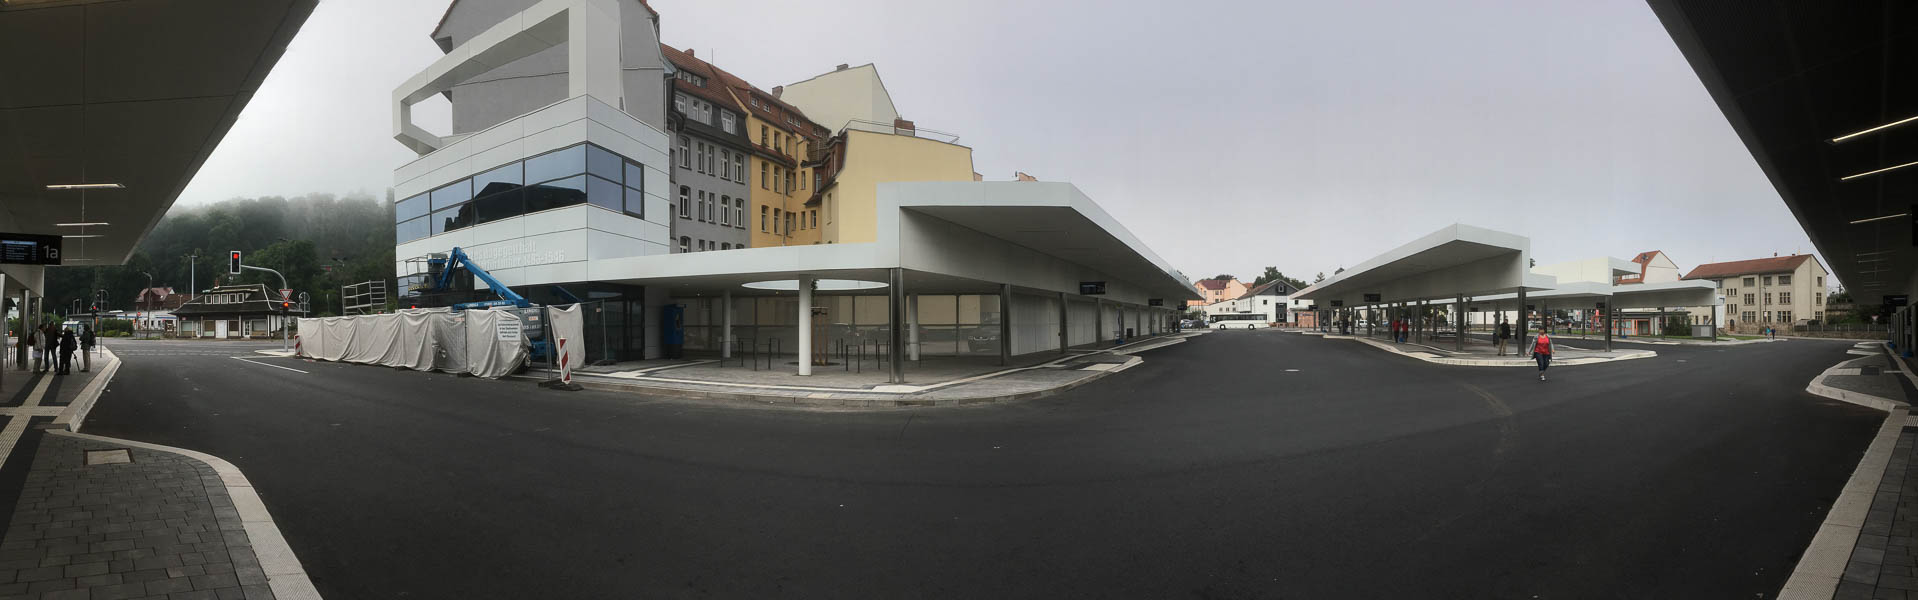 der neue Busbahnhof Eisenach vor der Einweihung - links das alte Busempfangsgebaeude